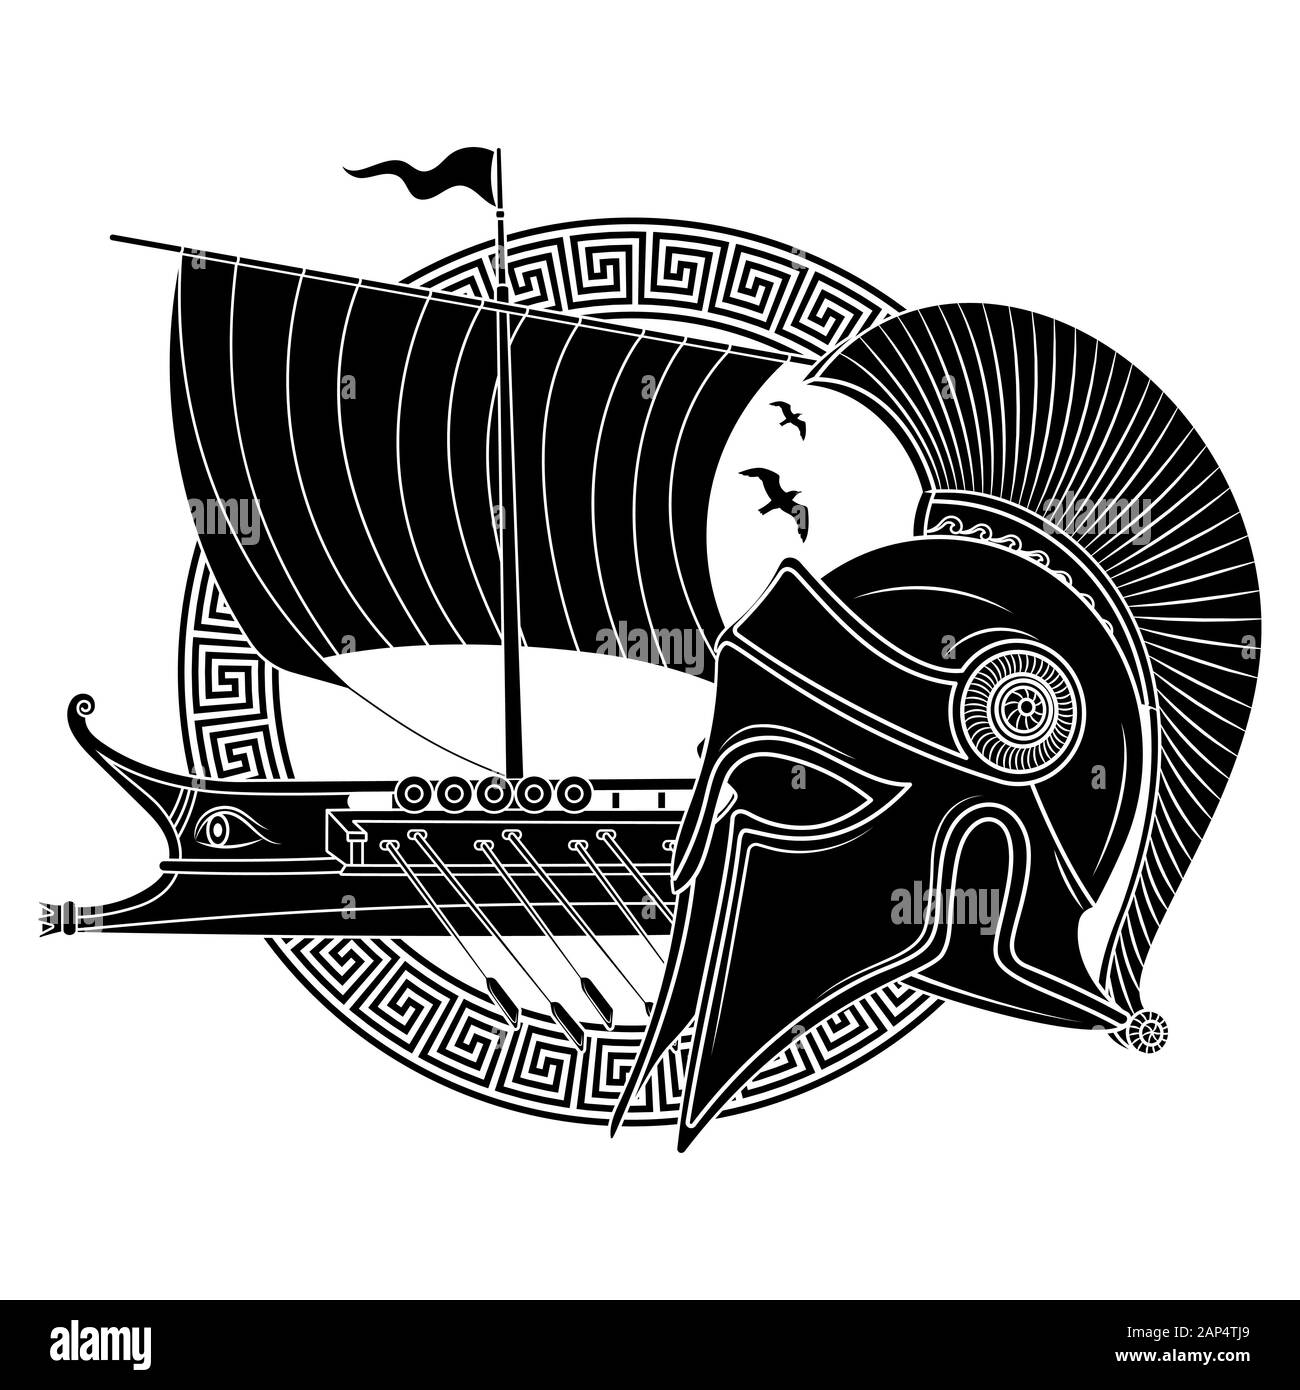 Ancien casque hellénique, ancien bateau à voile grec galley - triera et ornement grec serpentent Illustration de Vecteur